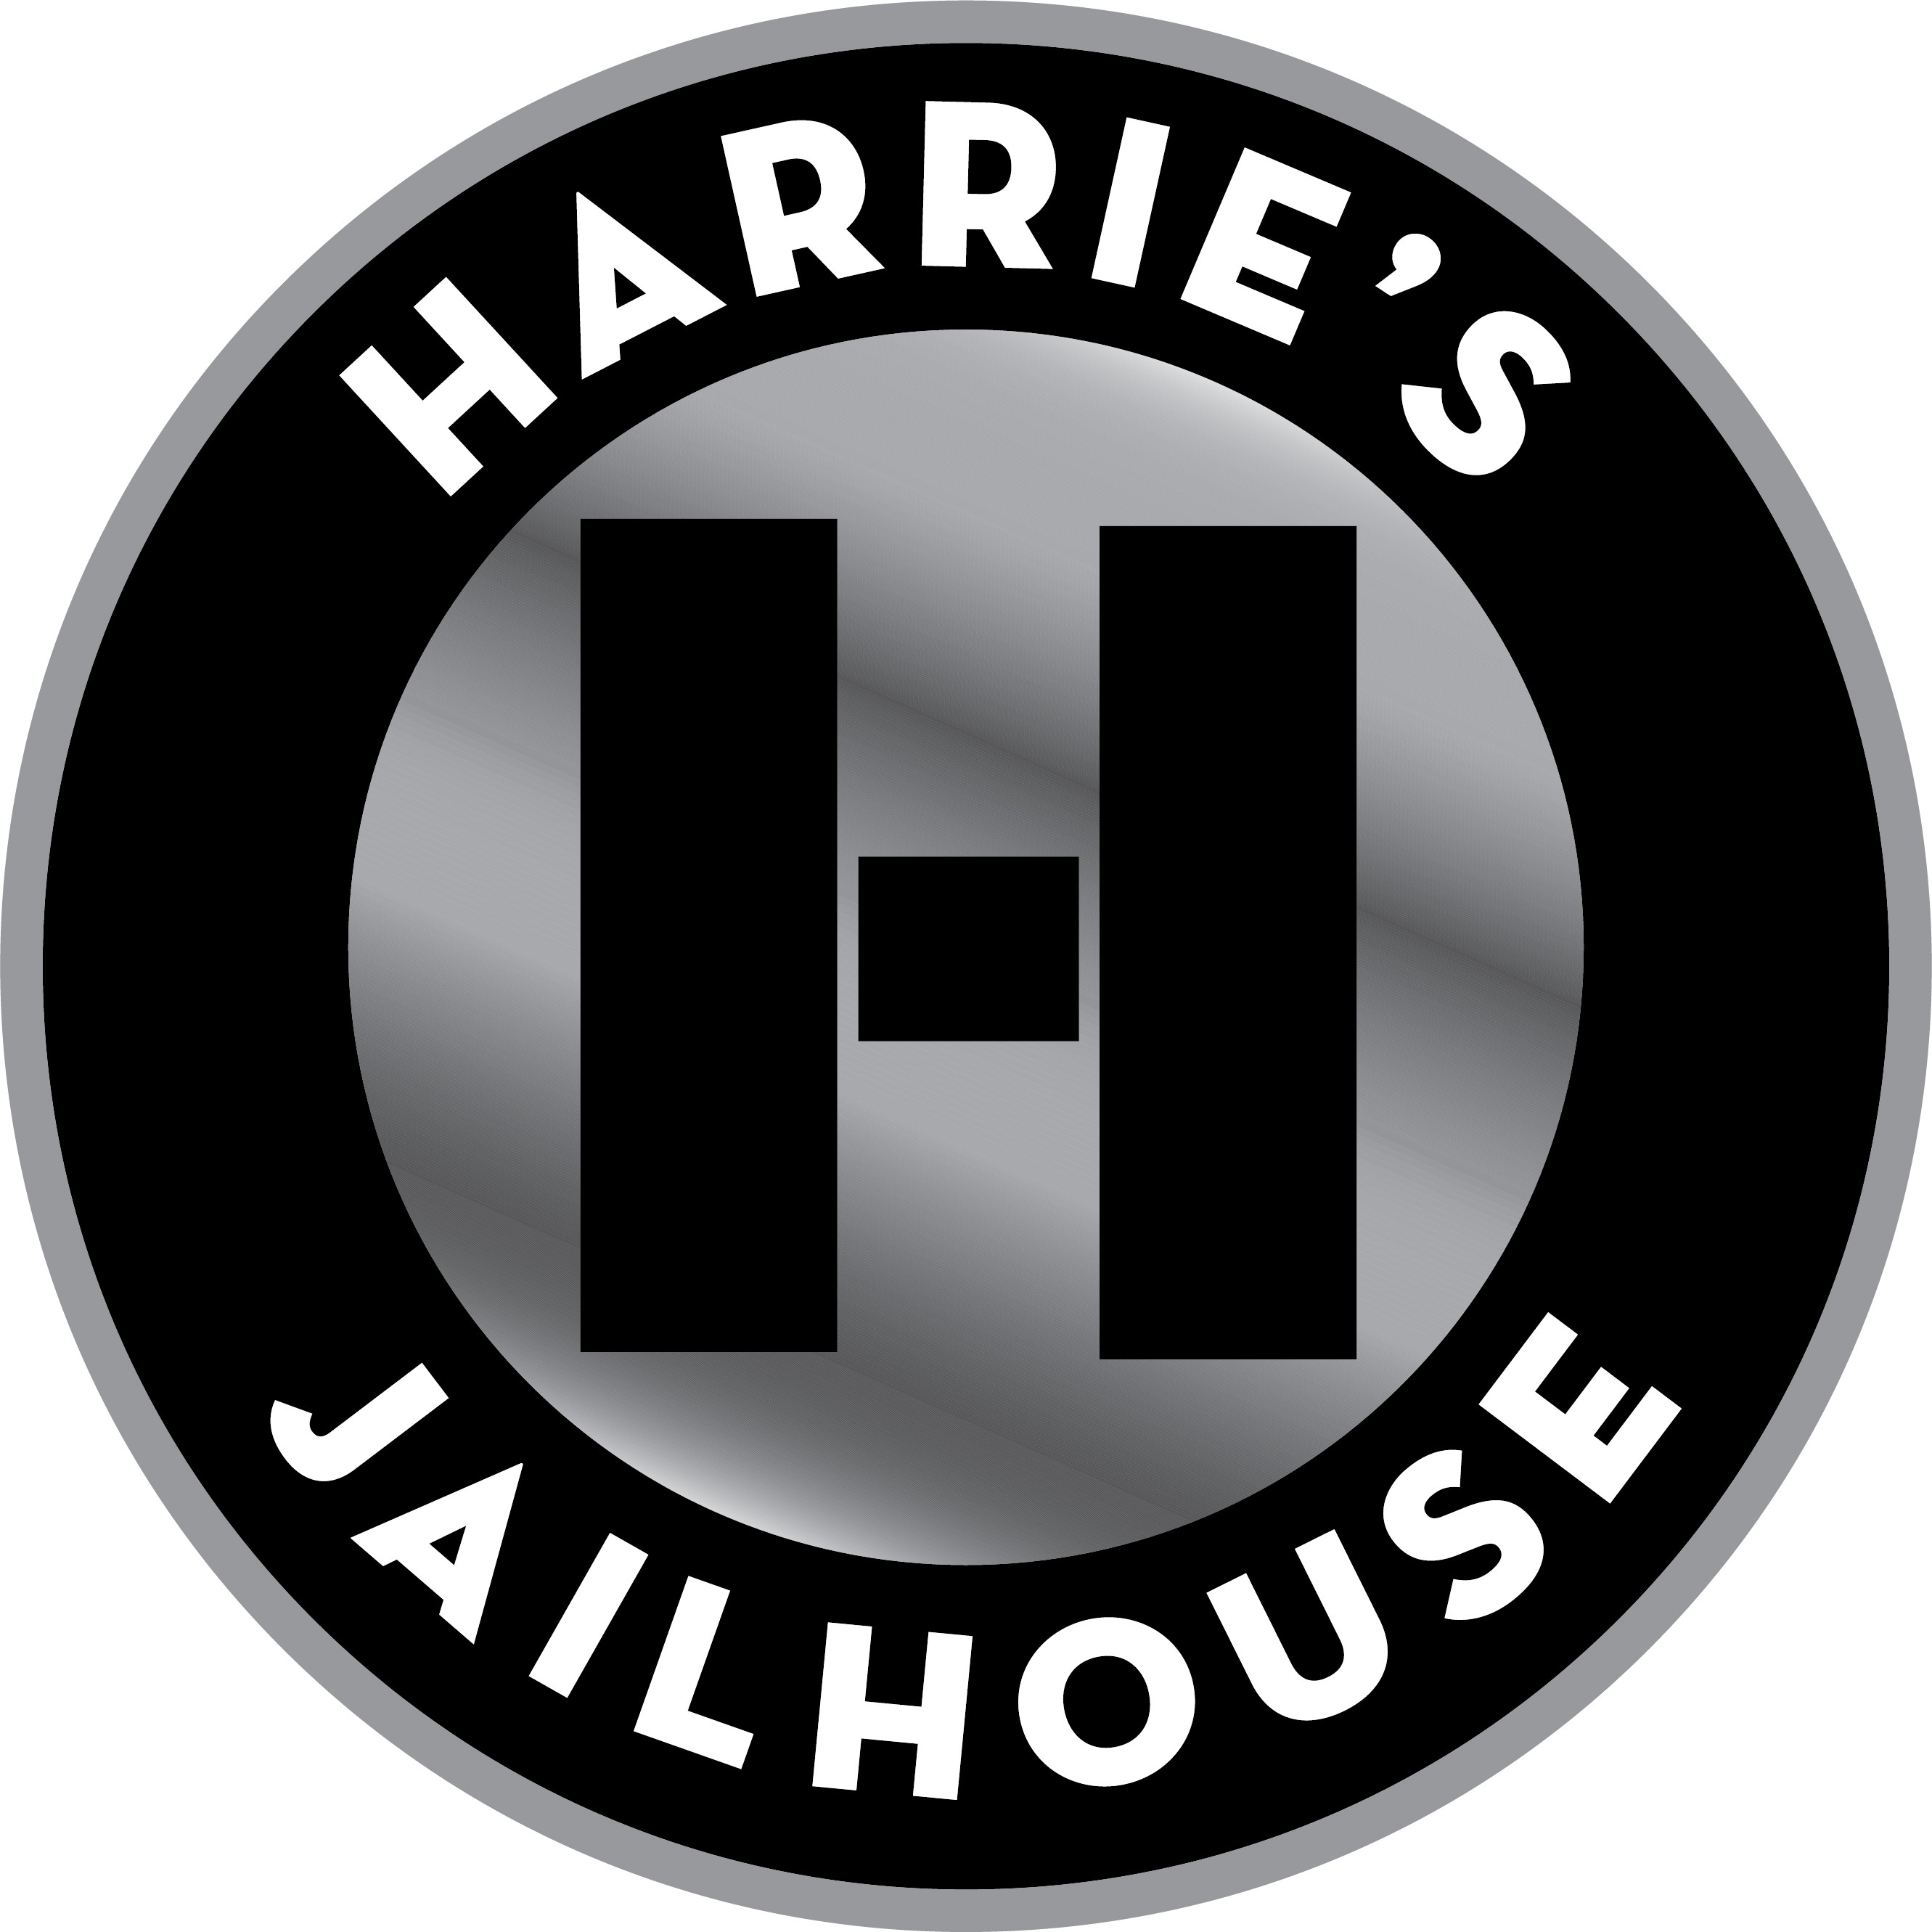 Harrie's Jailhouse